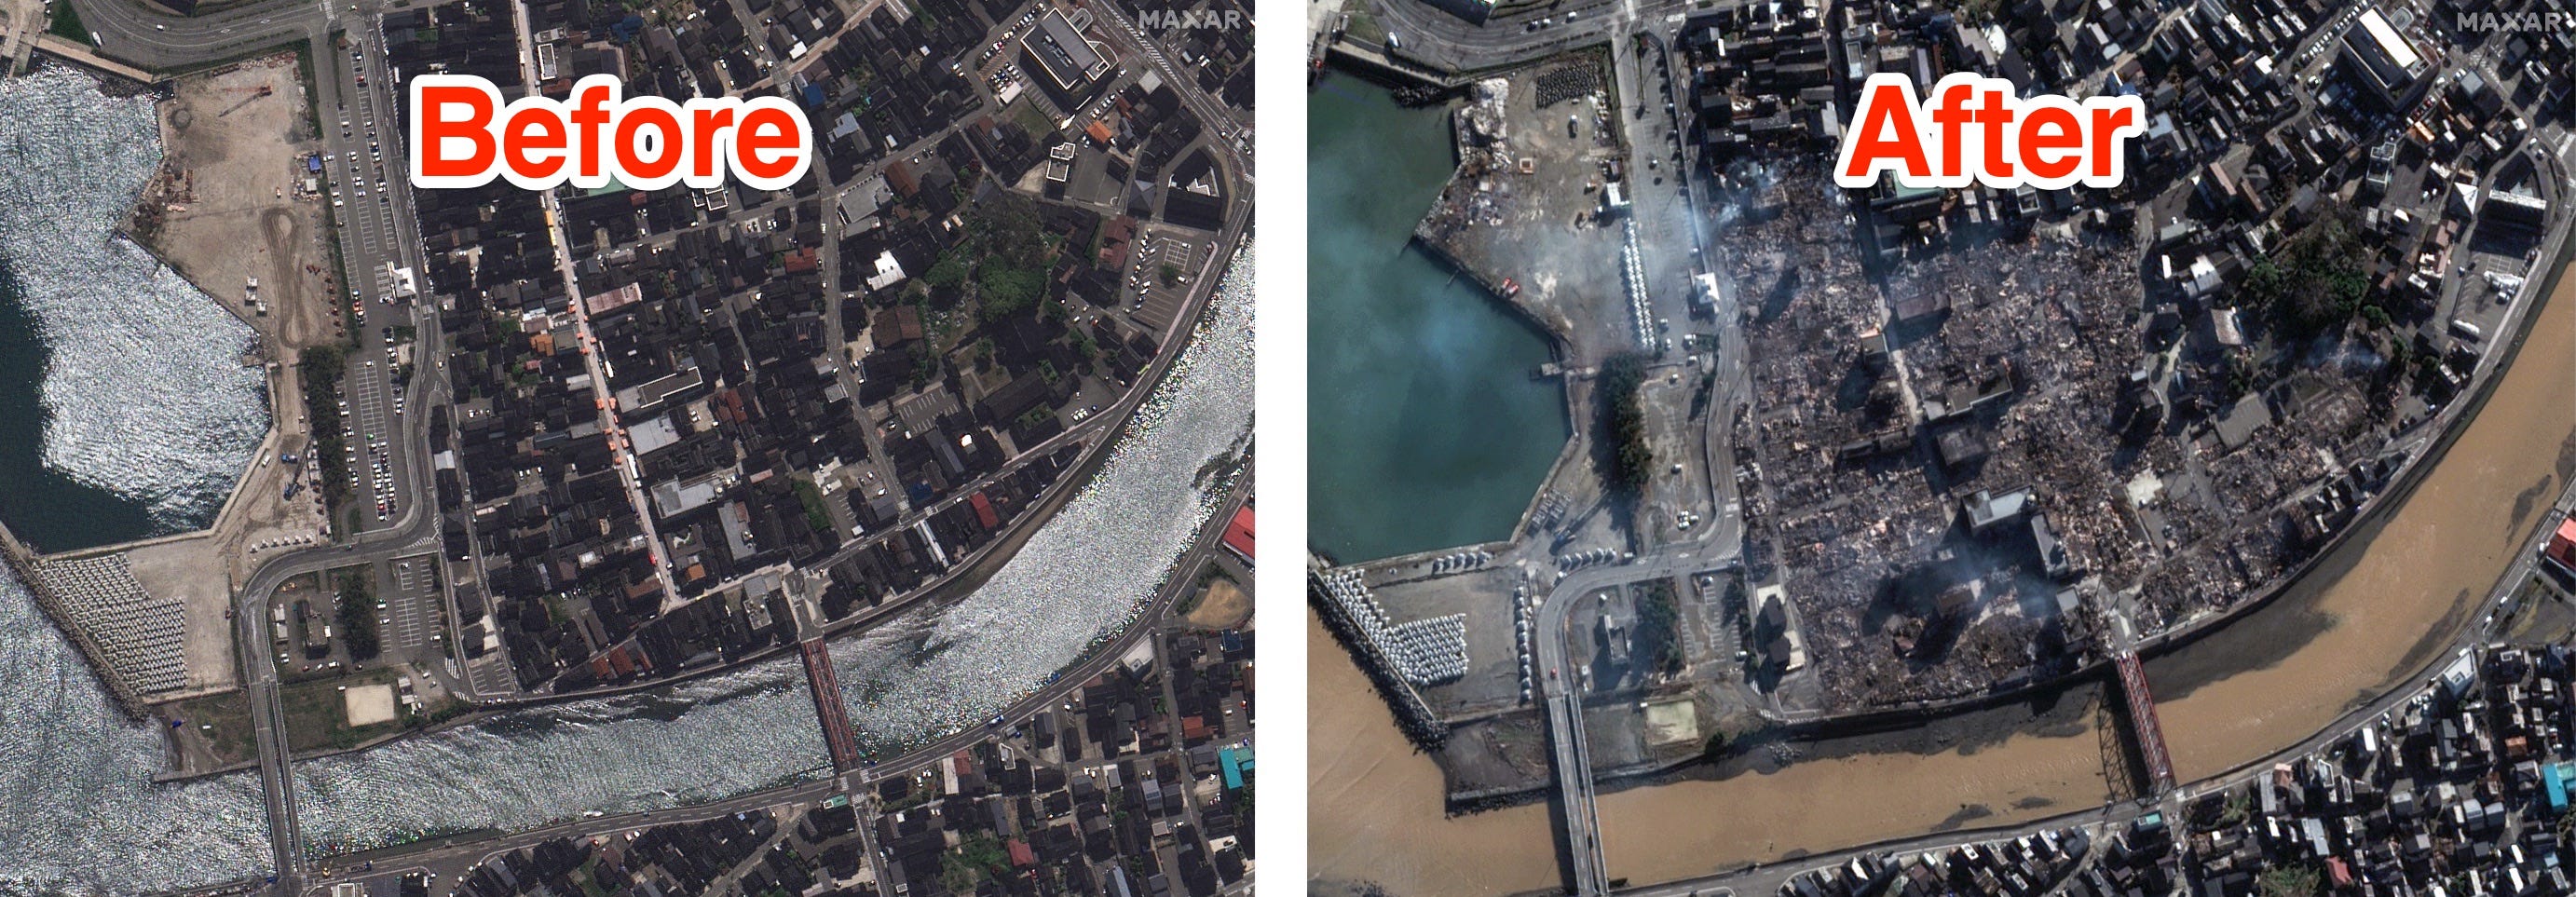 Links ist eine Luftaufnahme einer japanischen Stadt vor einem schweren Erdbeben zu sehen.  Rechts ist eine Luftaufnahme derselben Region nach dem Erdbeben zu sehen, die massive Zerstörungen an Häusern und Straßen zeigt.